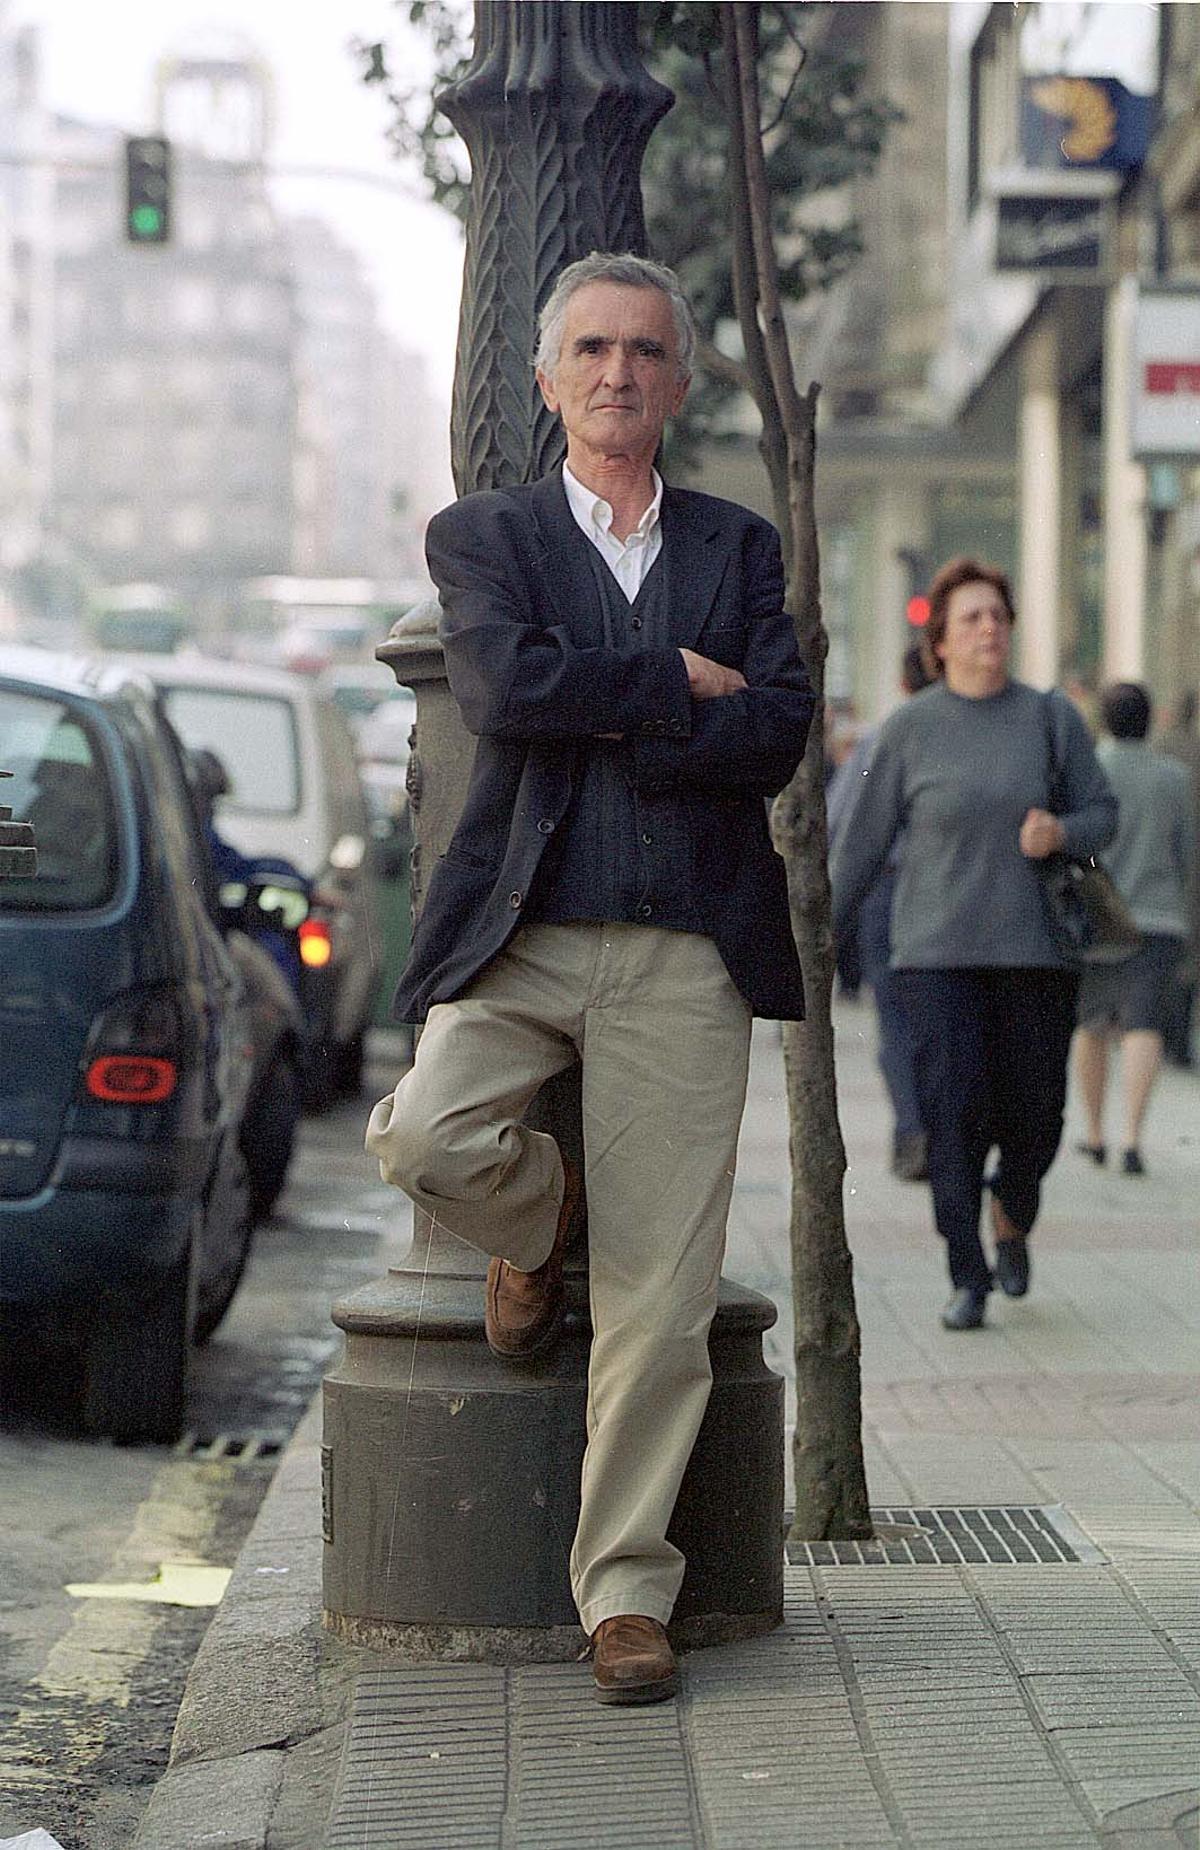 Oroza, en Vigo, año 2000.